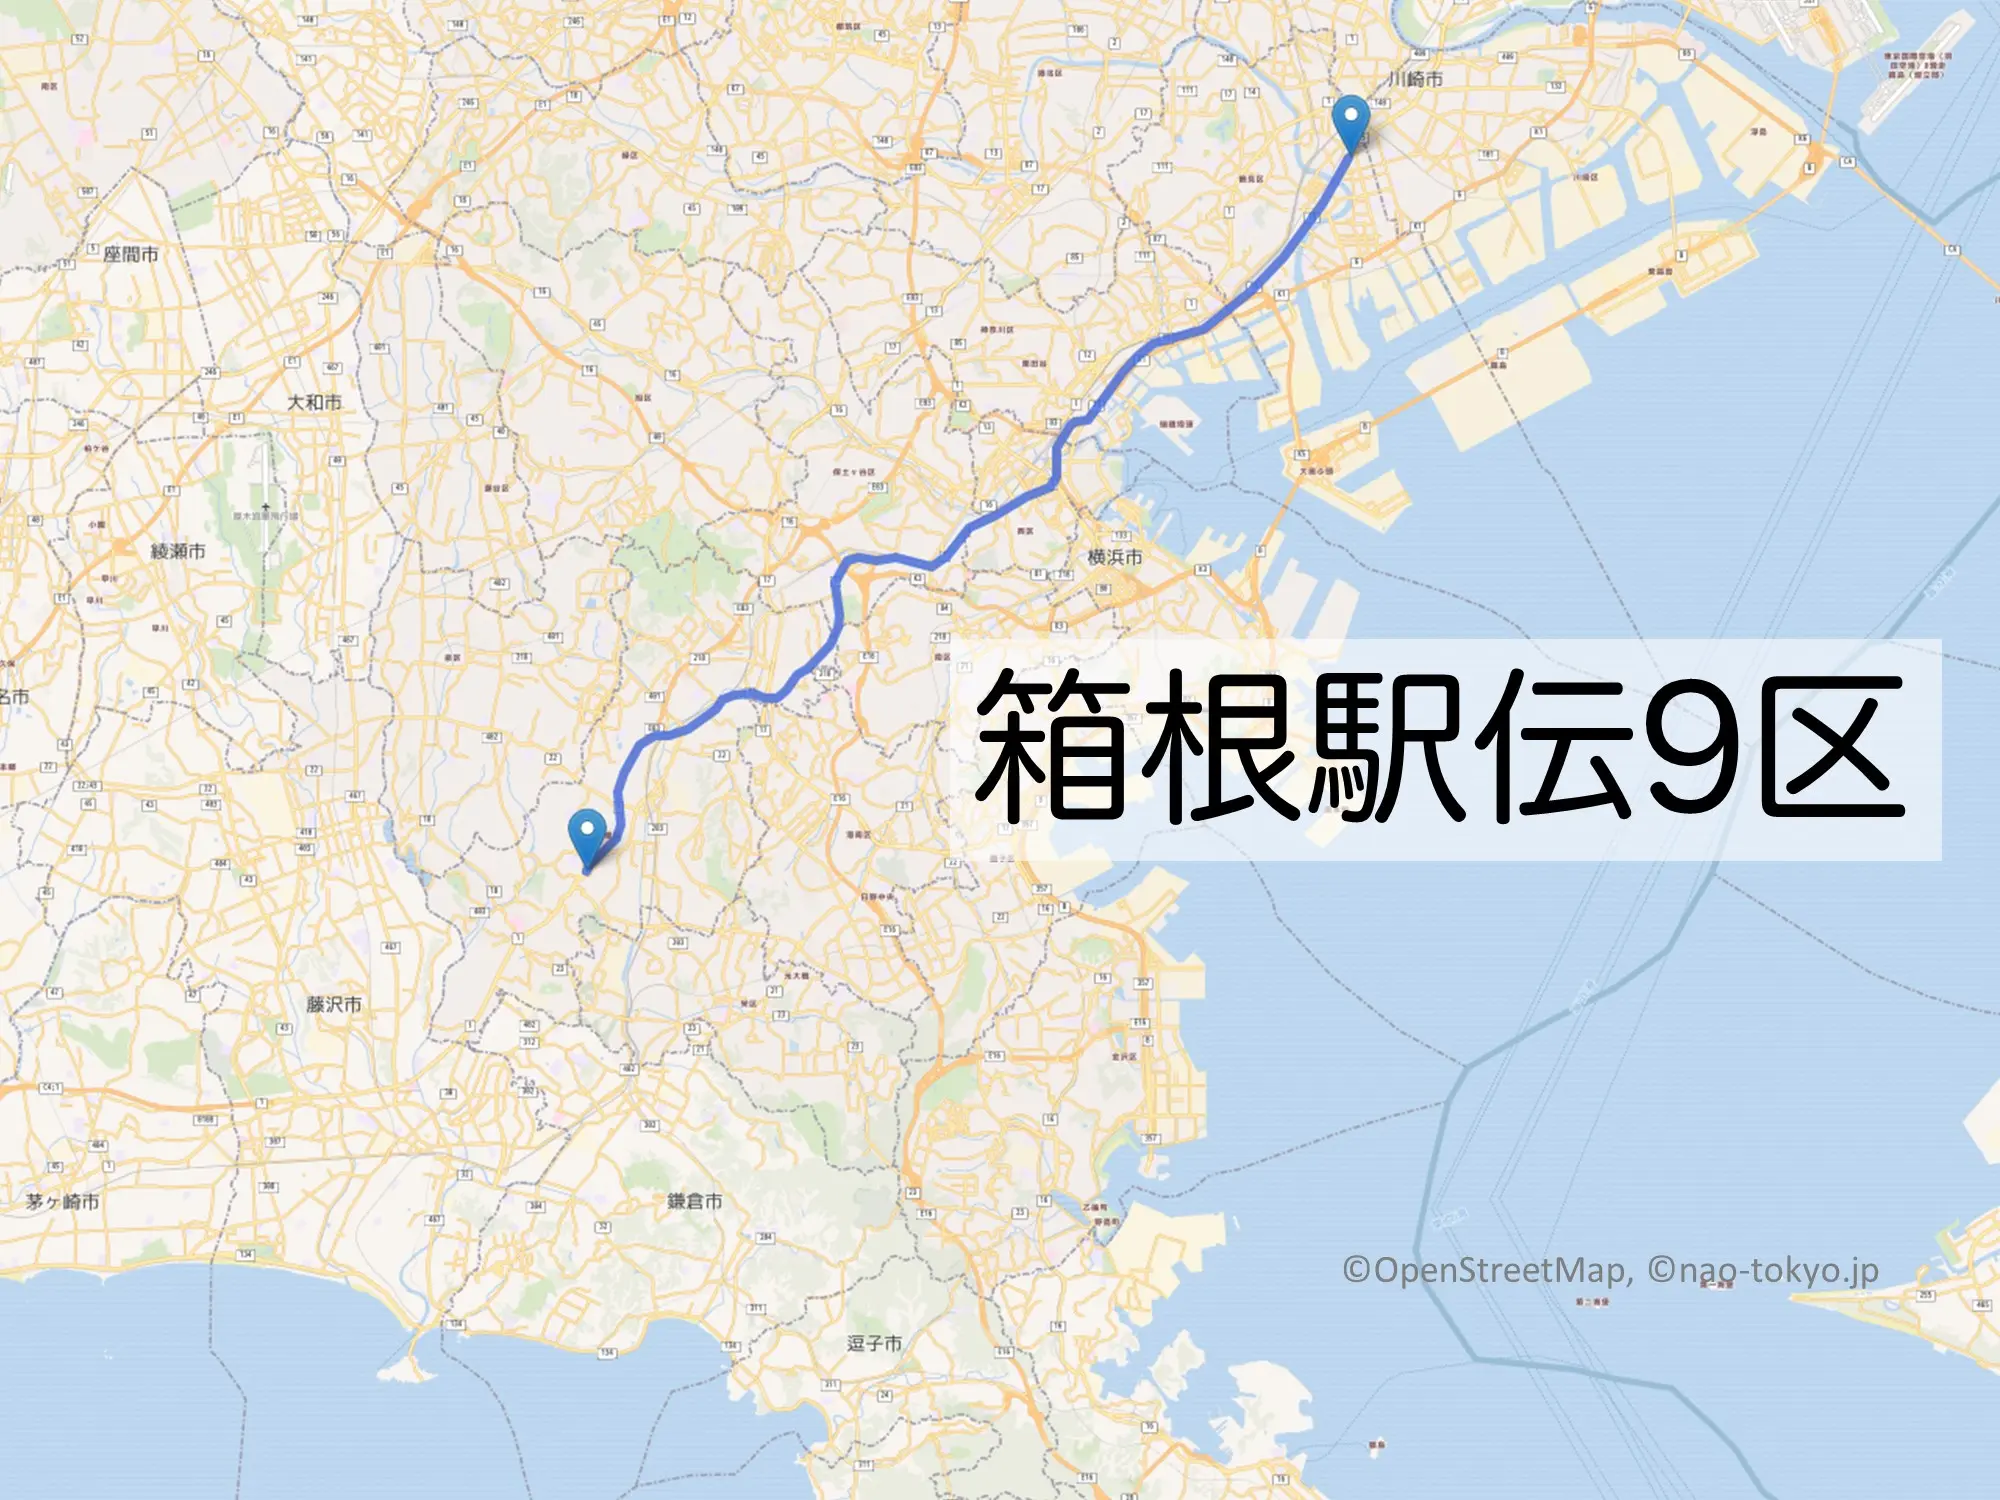 箱根駅伝9区のコースをマップで解説